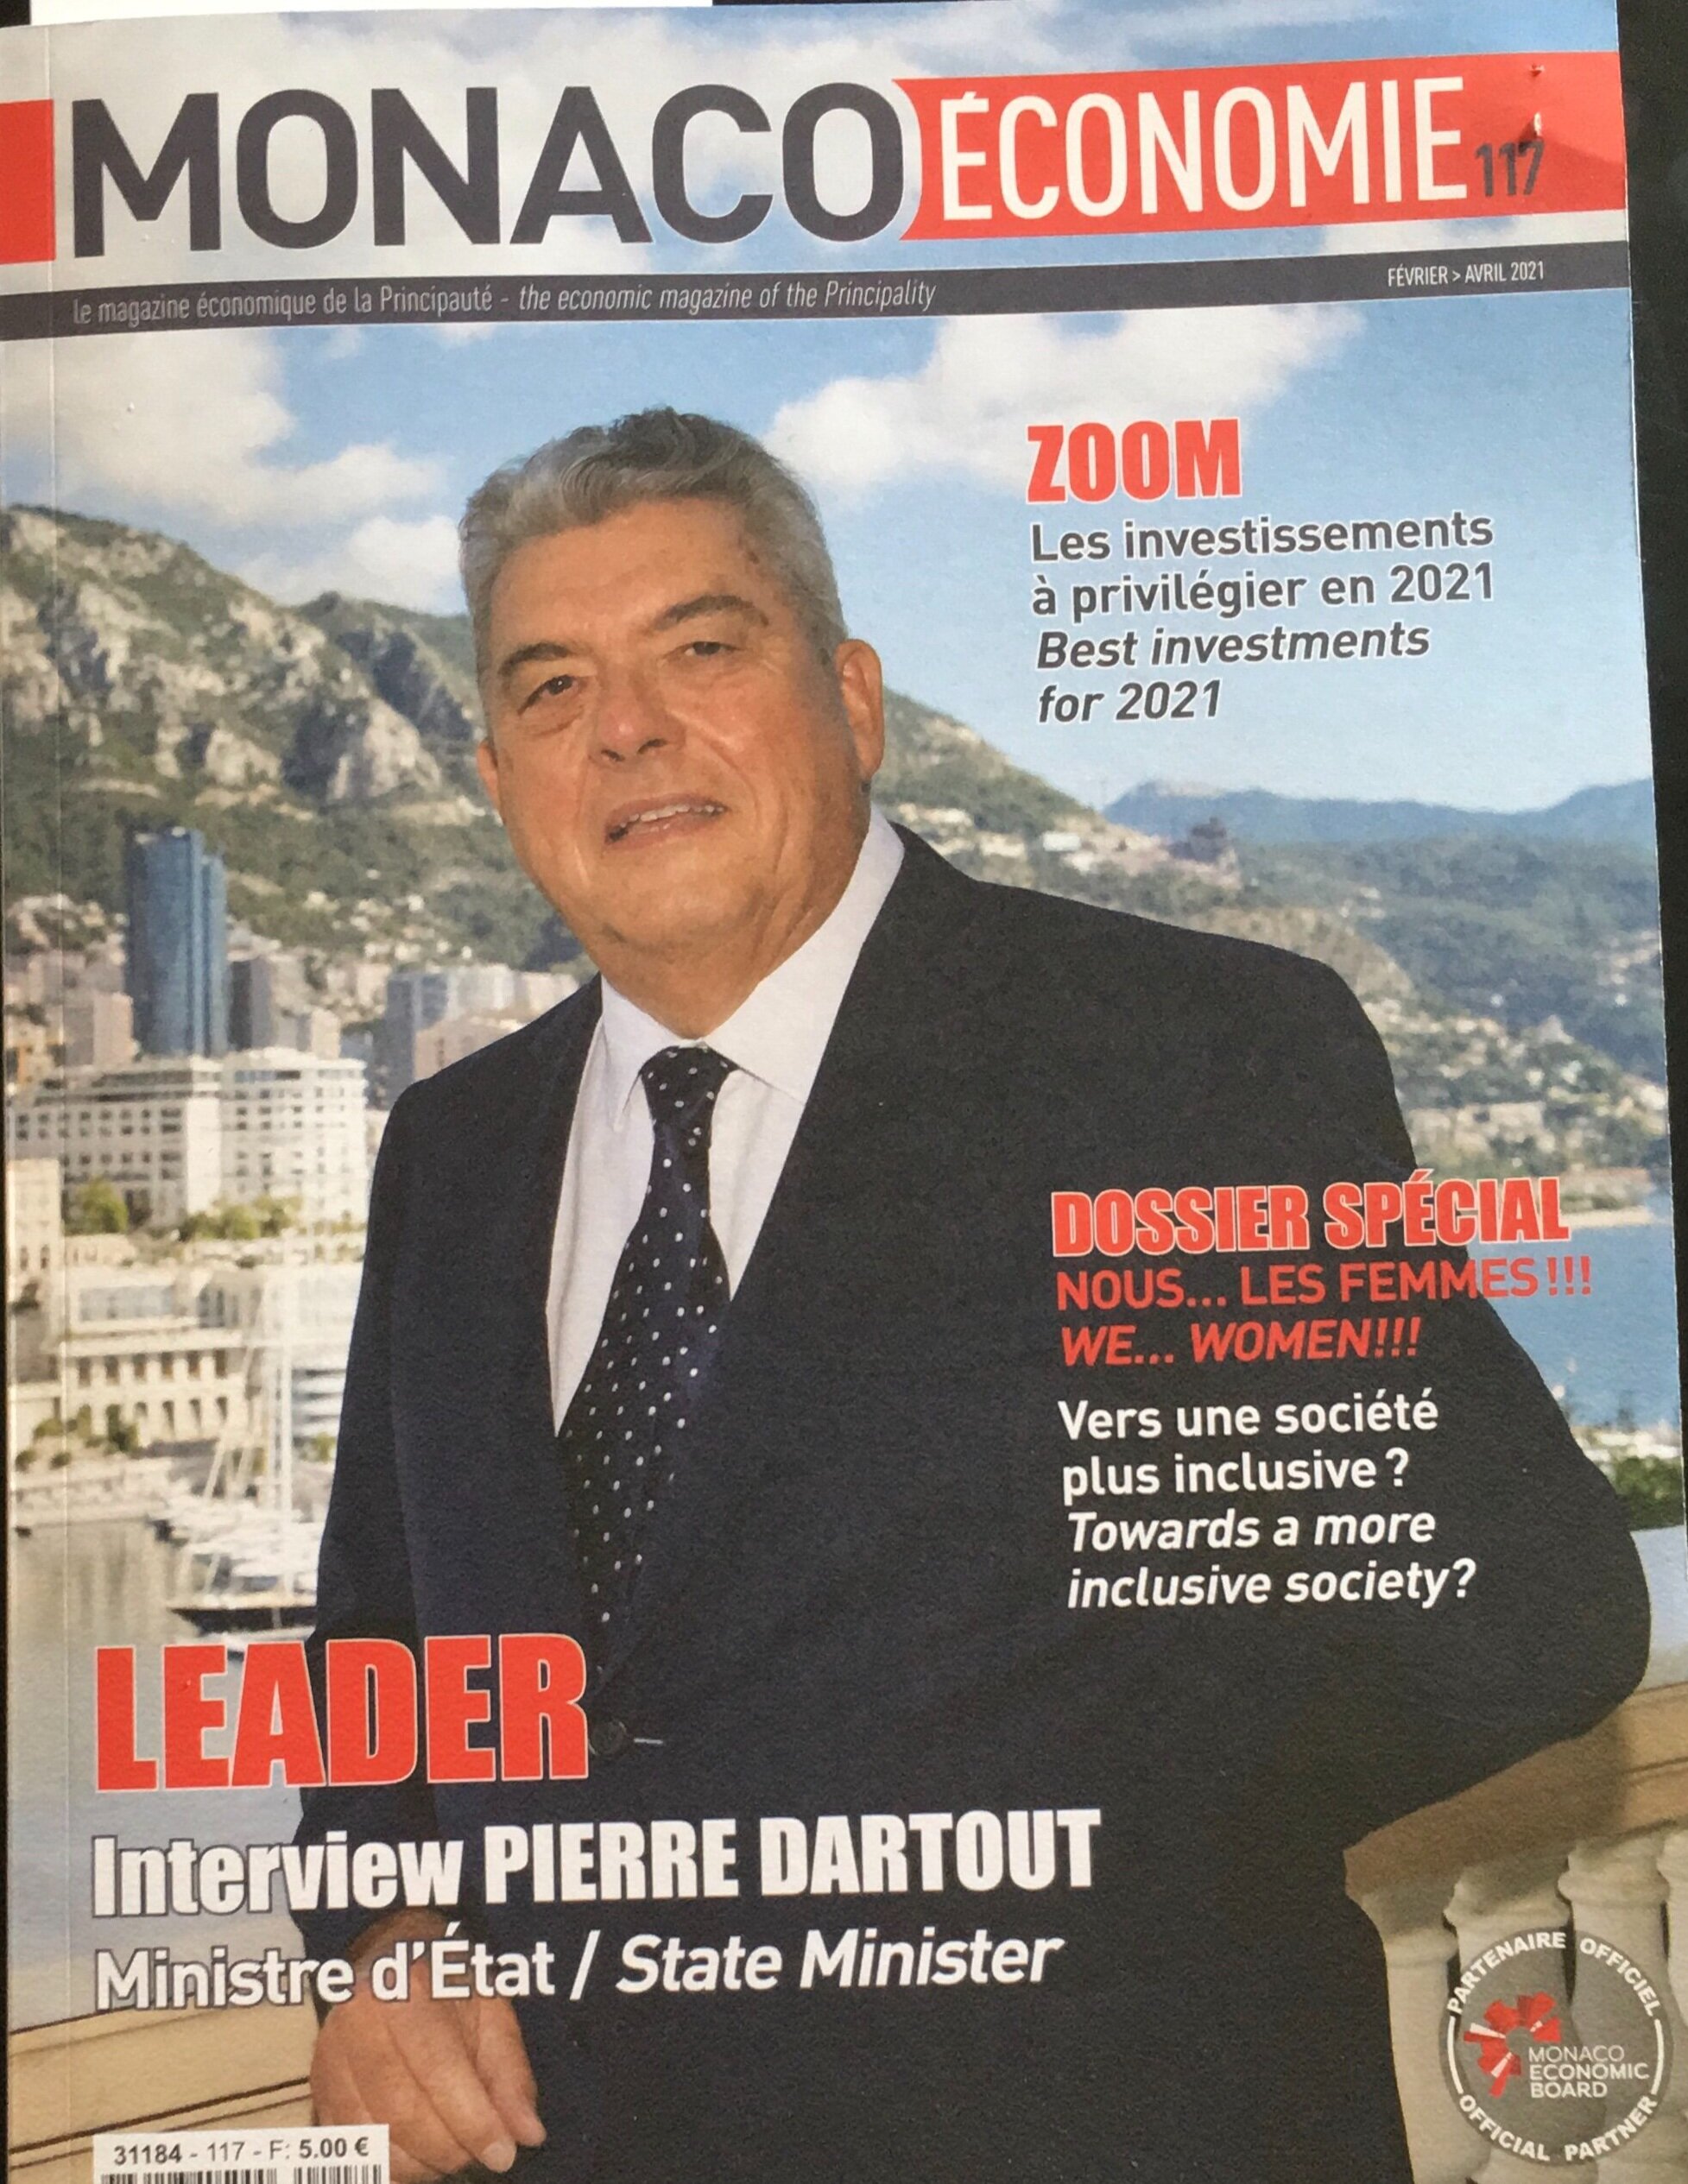 Dossier “Nous les Femmes”, Monaco Economie